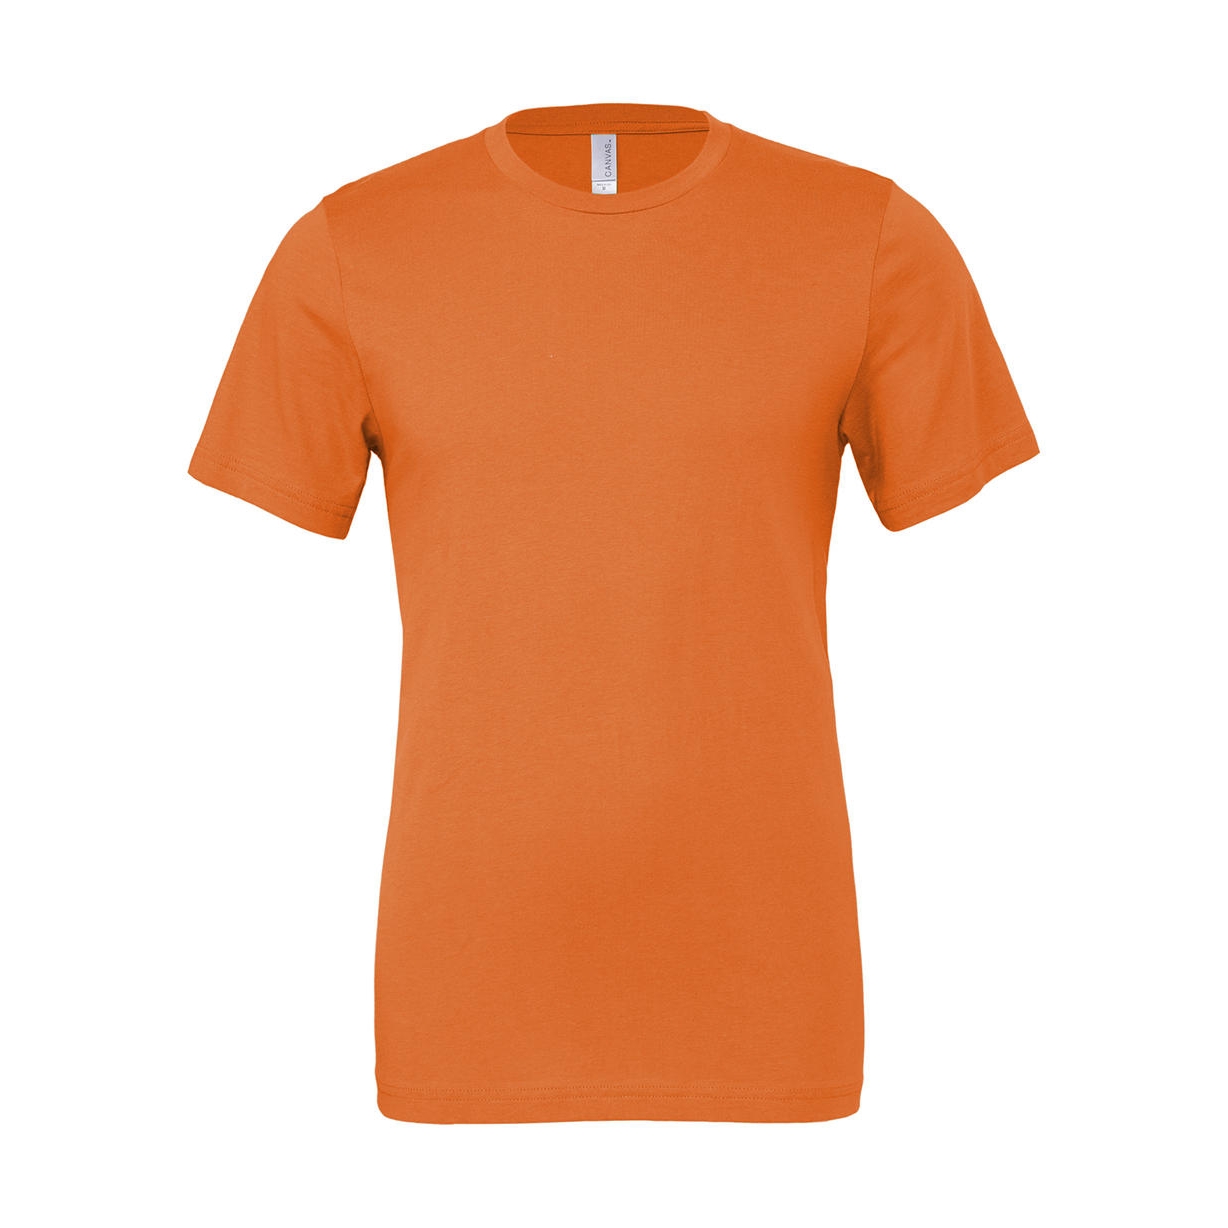 Tričko Bella Jersey - oranžové, M